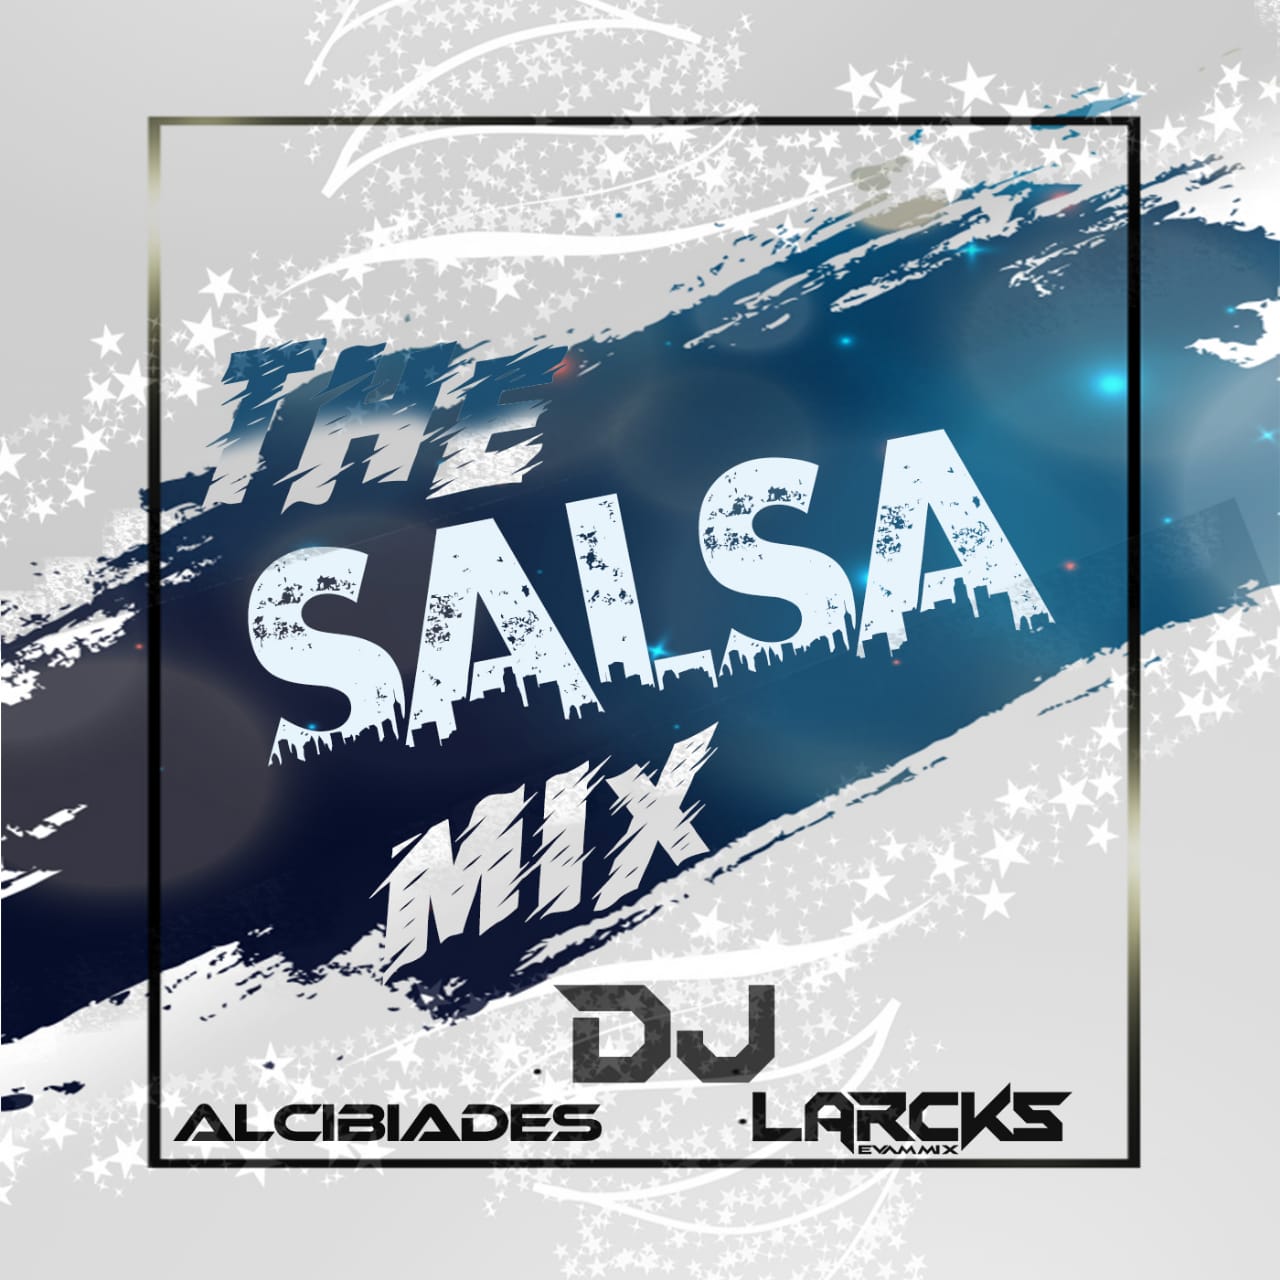 The Salsa Mix - Dj alcibiades507 ft Dj Larcks.mp3